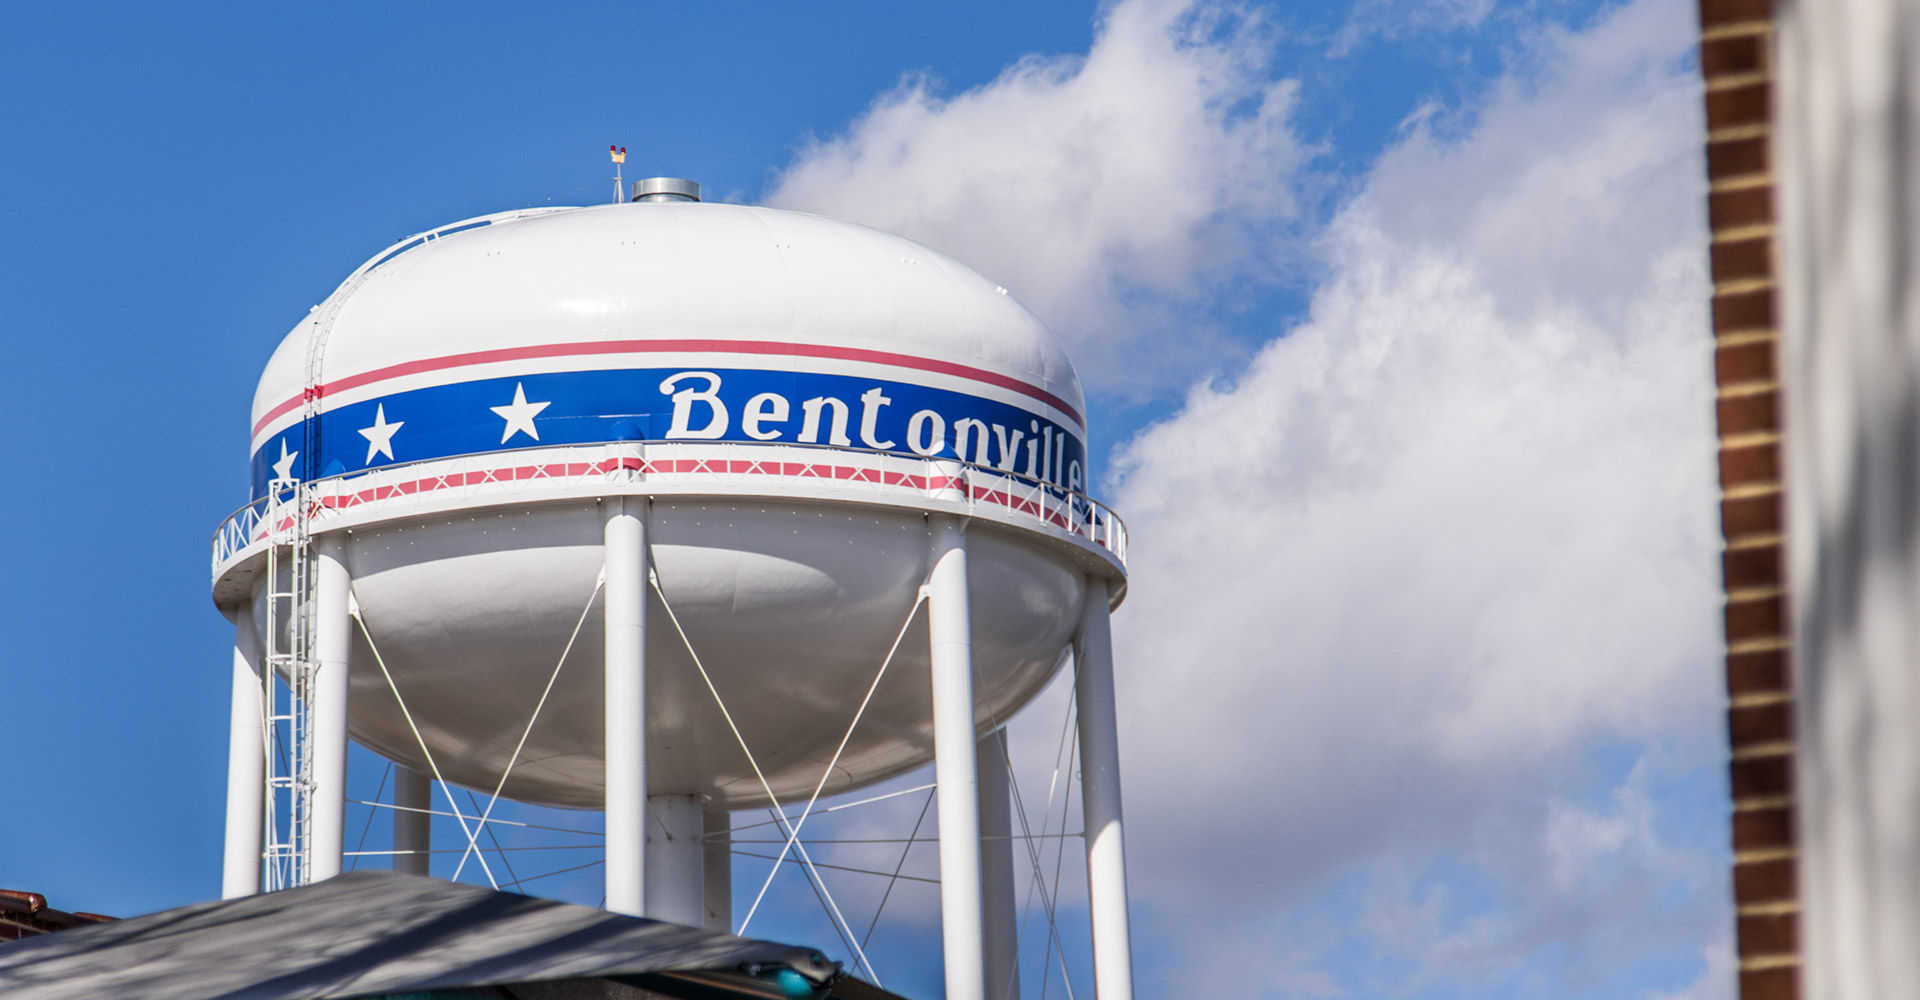 Bentonville Water Tower